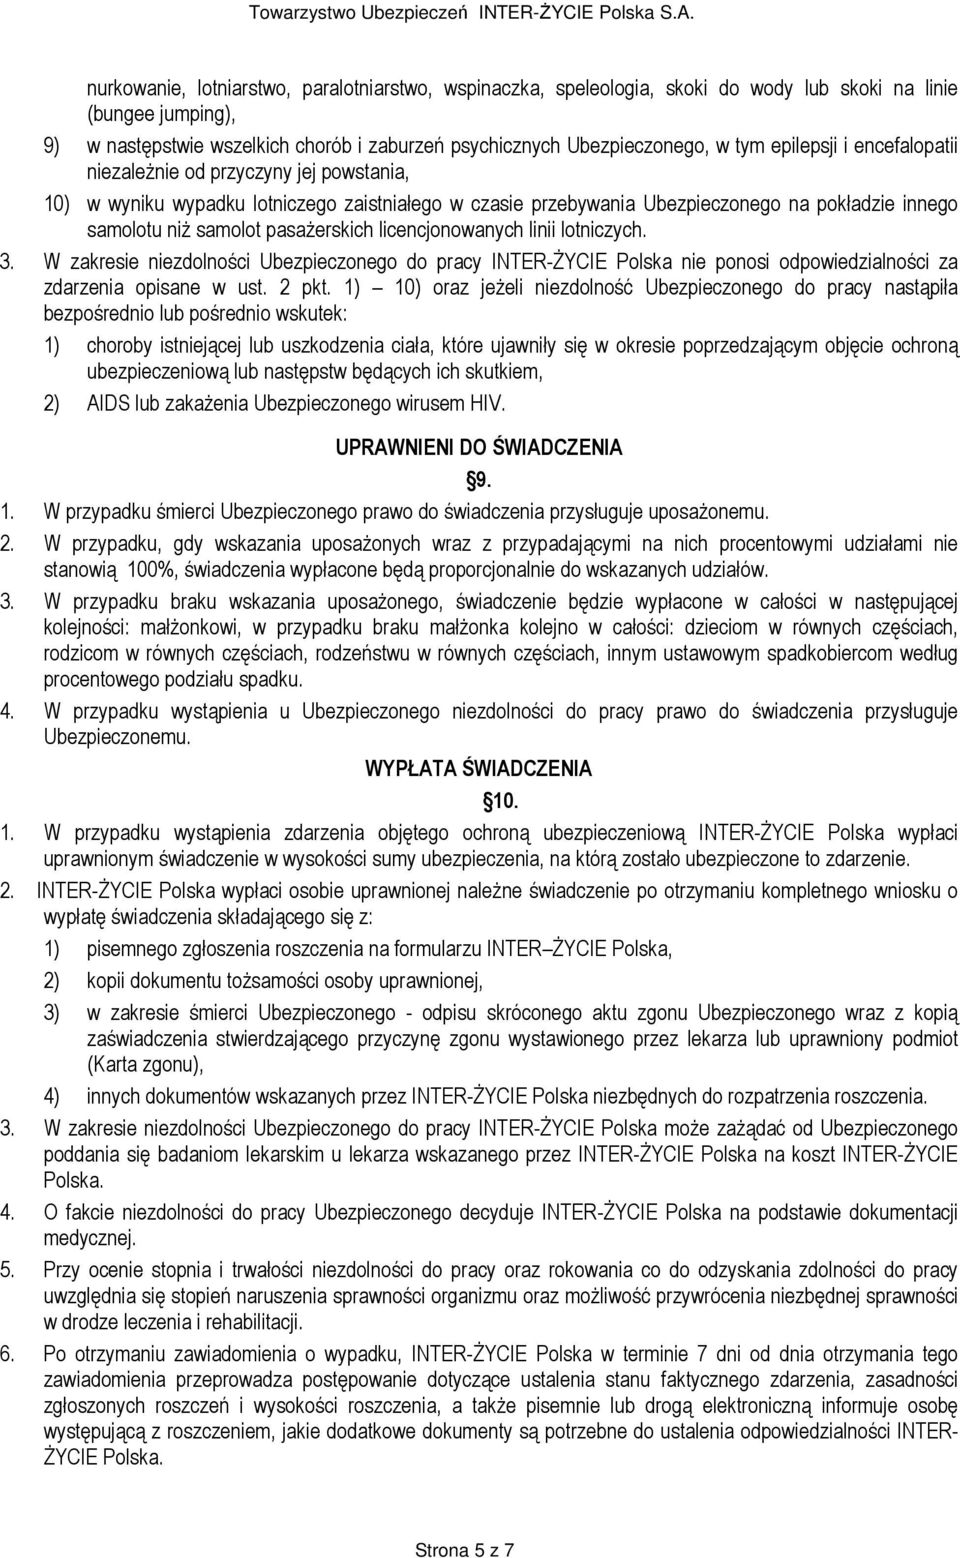 pasaŝerskich licencjonowanych linii lotniczych. 3. W zakresie niezdolności Ubezpieczonego do pracy INTER-śYCIE Polska nie ponosi odpowiedzialności za zdarzenia opisane w ust. 2 pkt.